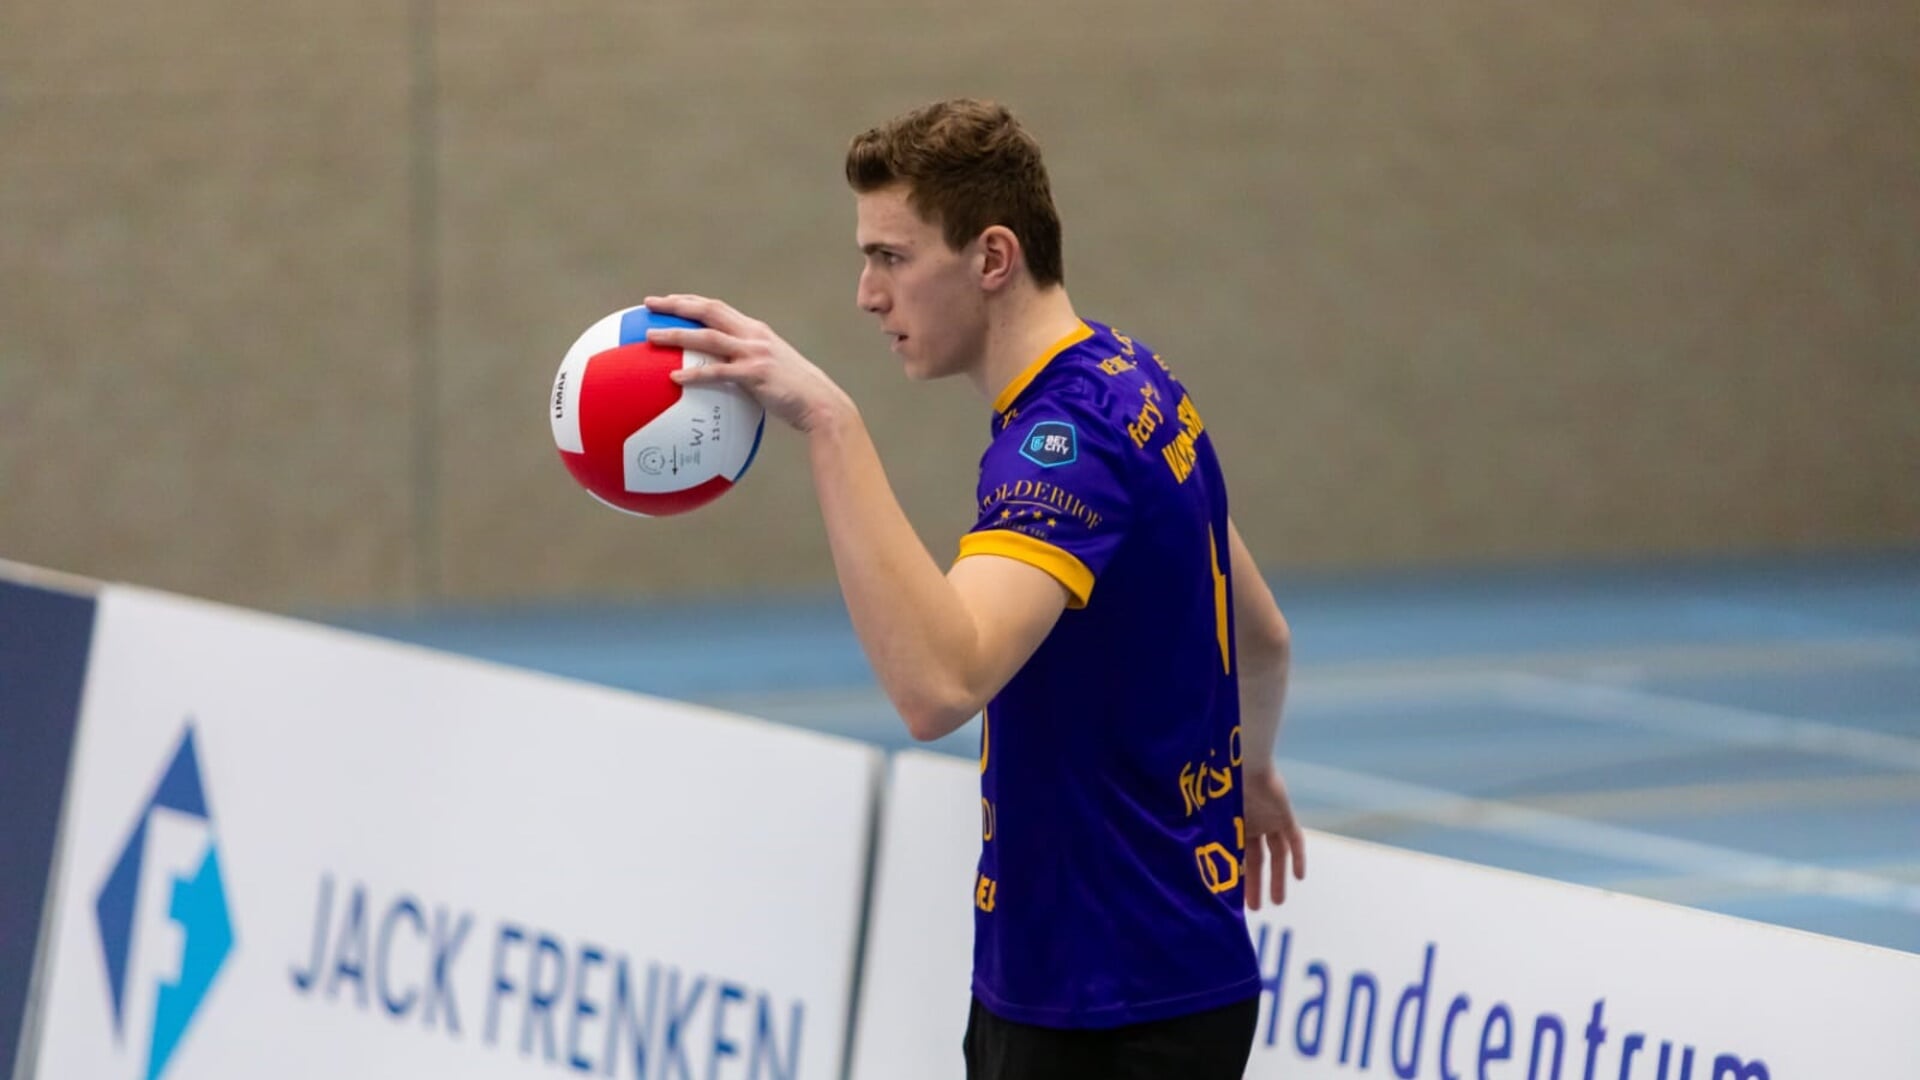 De Boxtelse volleyballer Remco van den Elshout aan de bal. Foto's: Noa Klerckx | VIBESS 